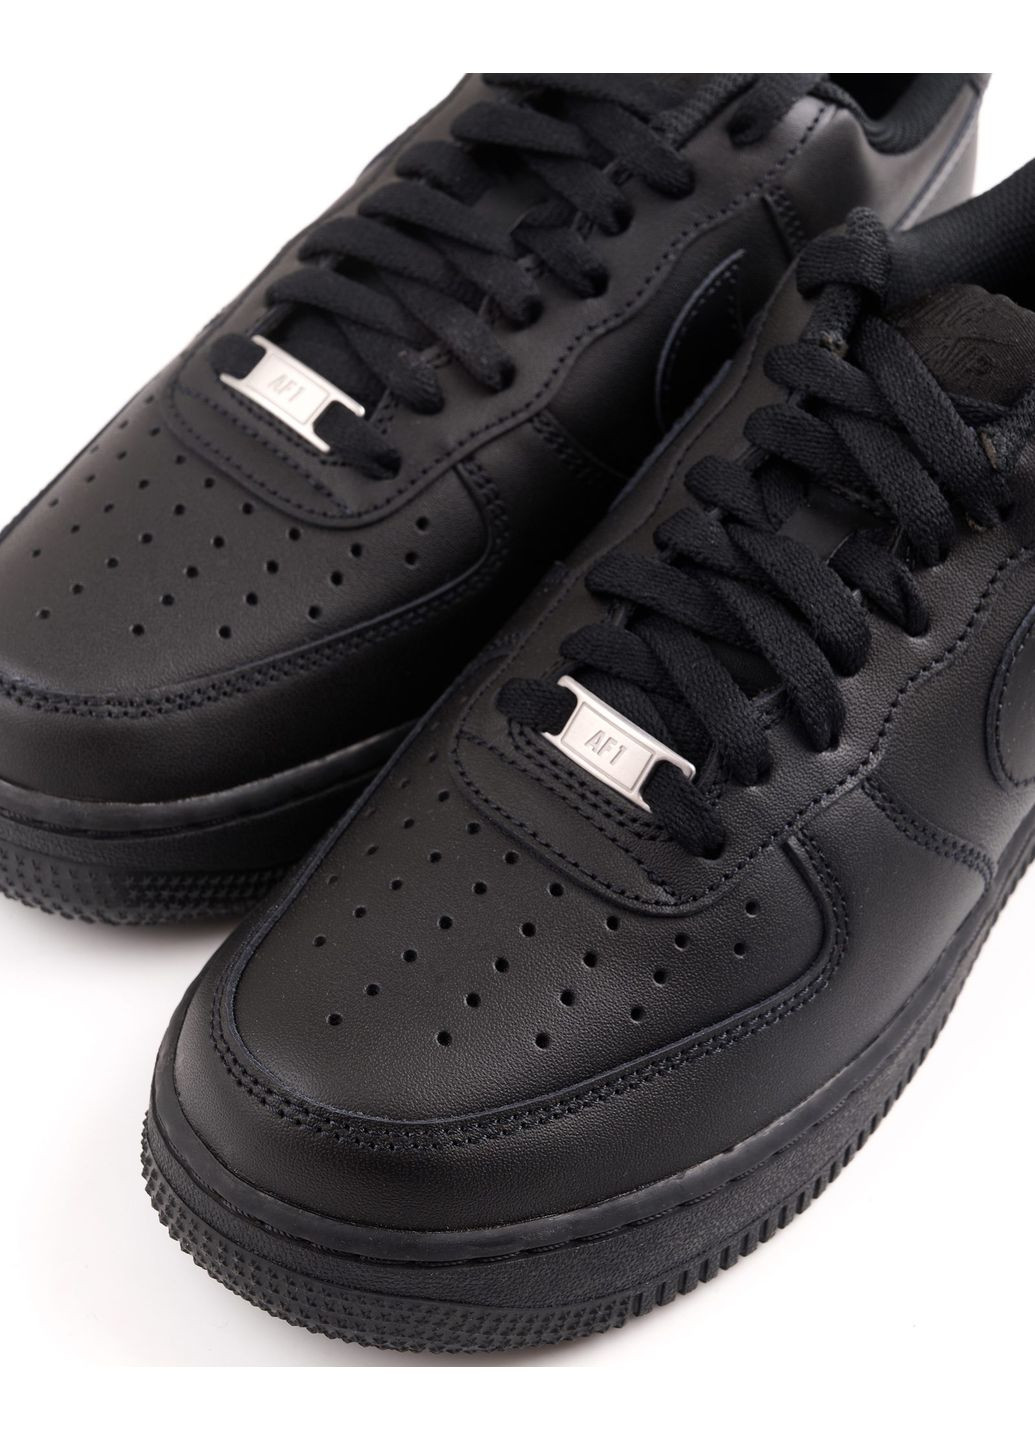 Чорні всесезон кросівки чоловічі air force 1 '07 cw2288-001 весна-осінь шкіра чорні Nike